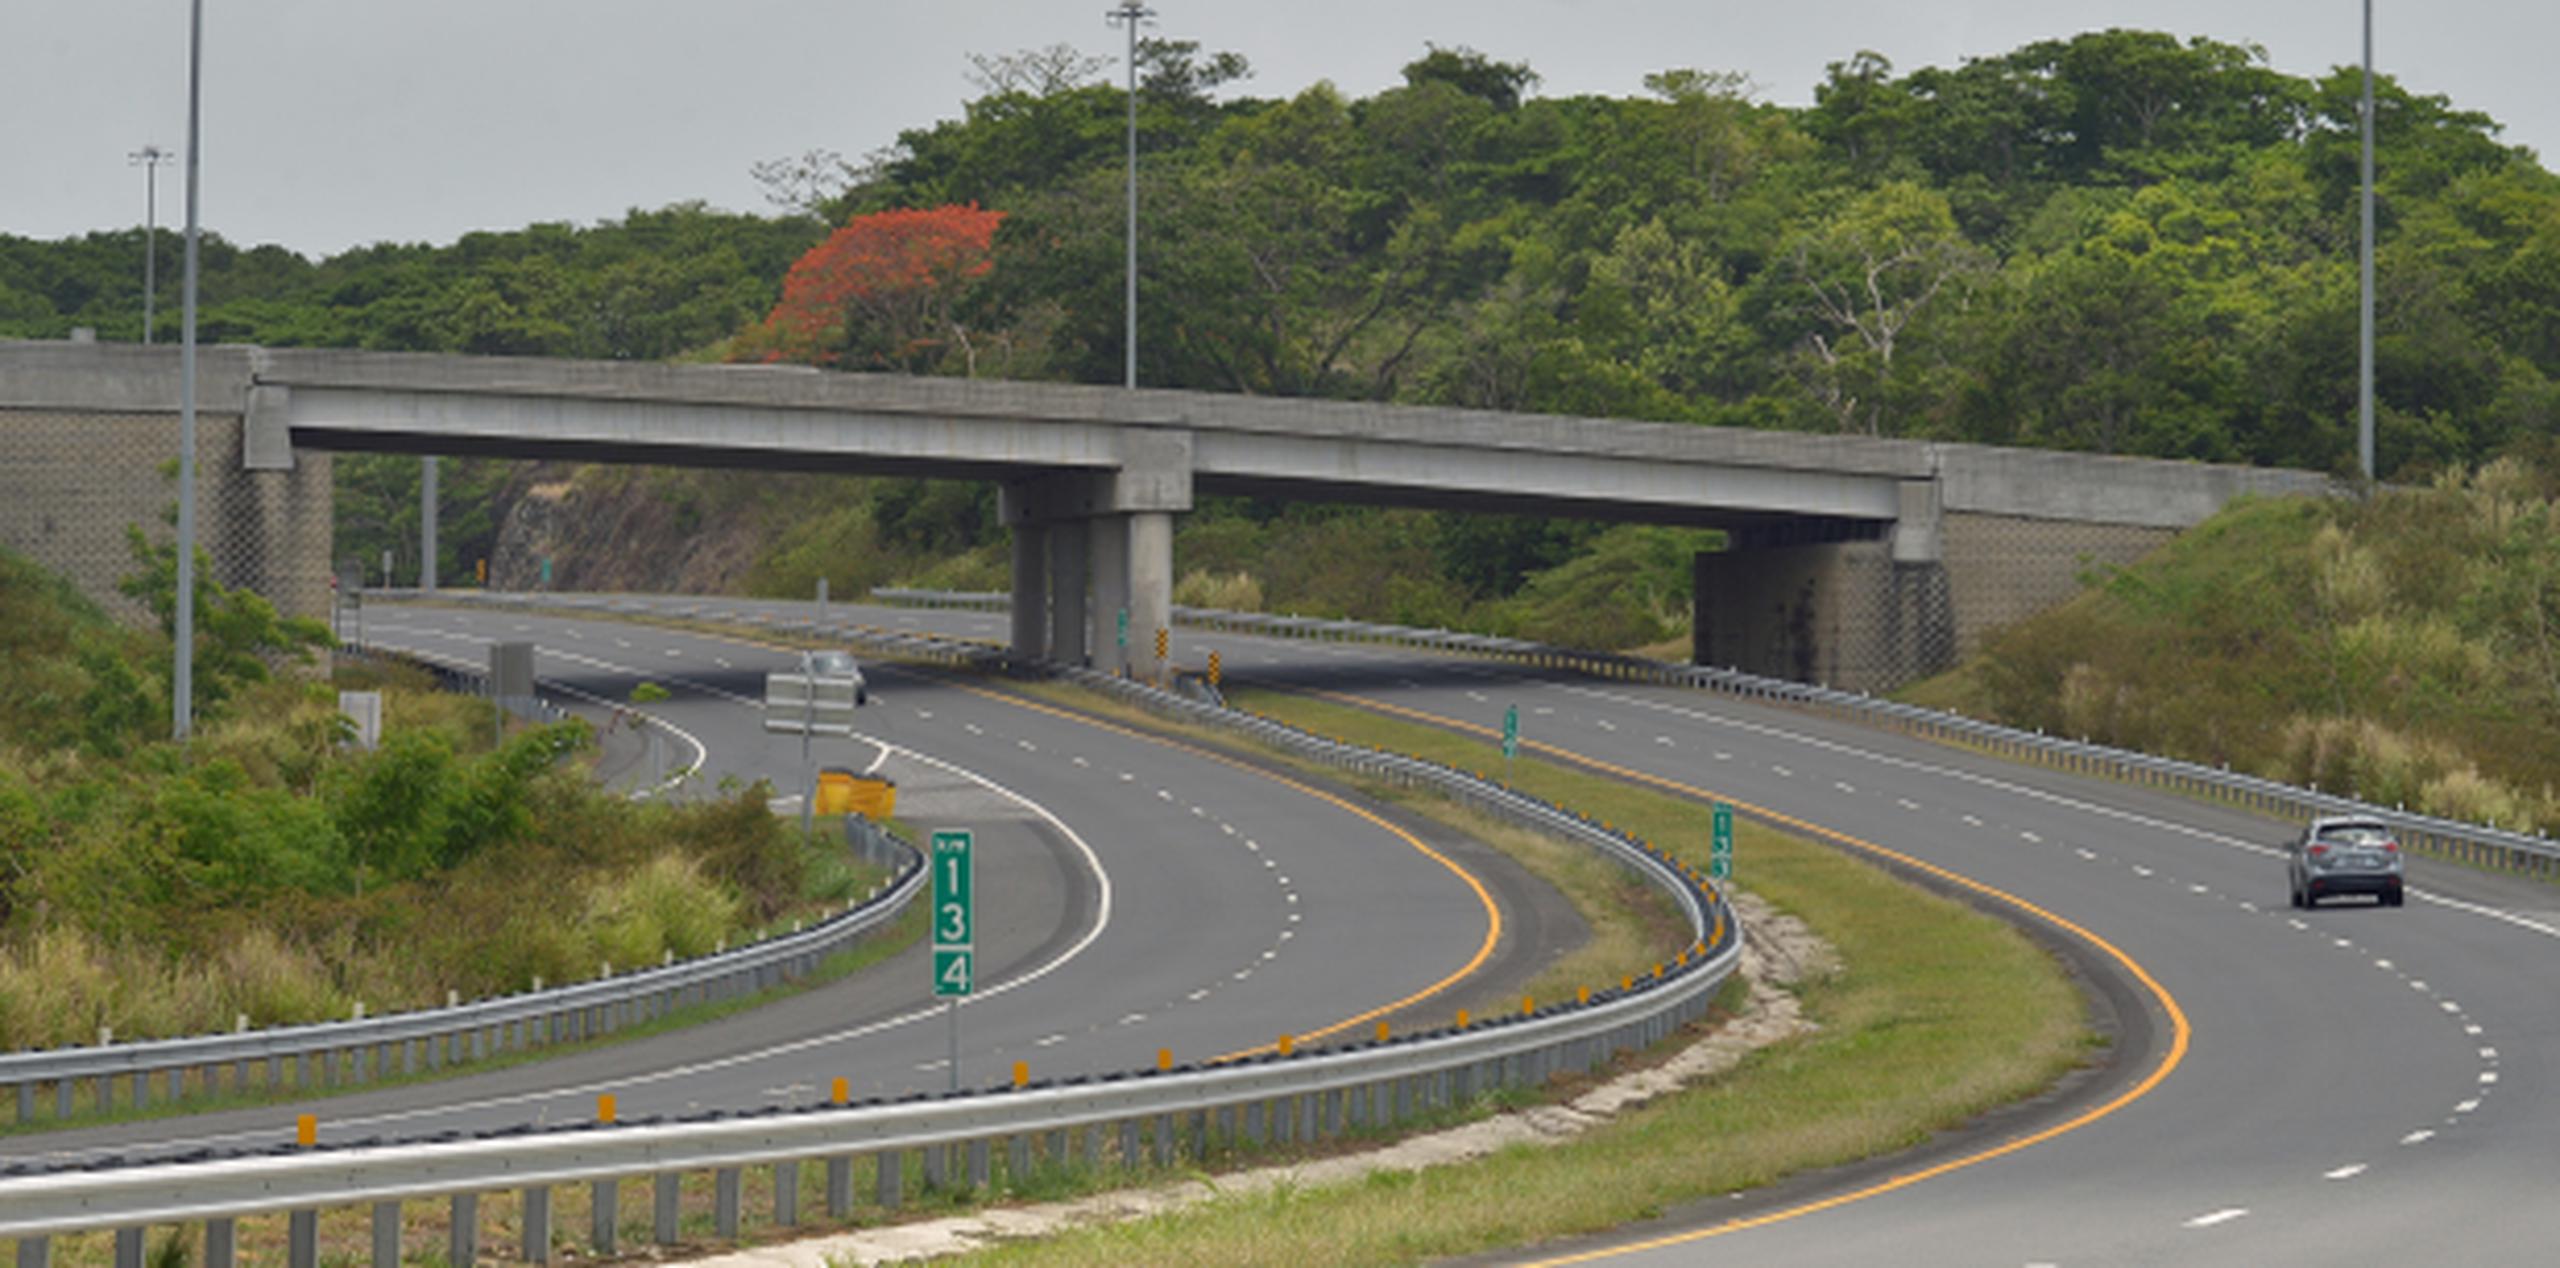 Estos fondos se utilizan para mejoras a las carreteras y puentes en toda la isla. (Archivo)